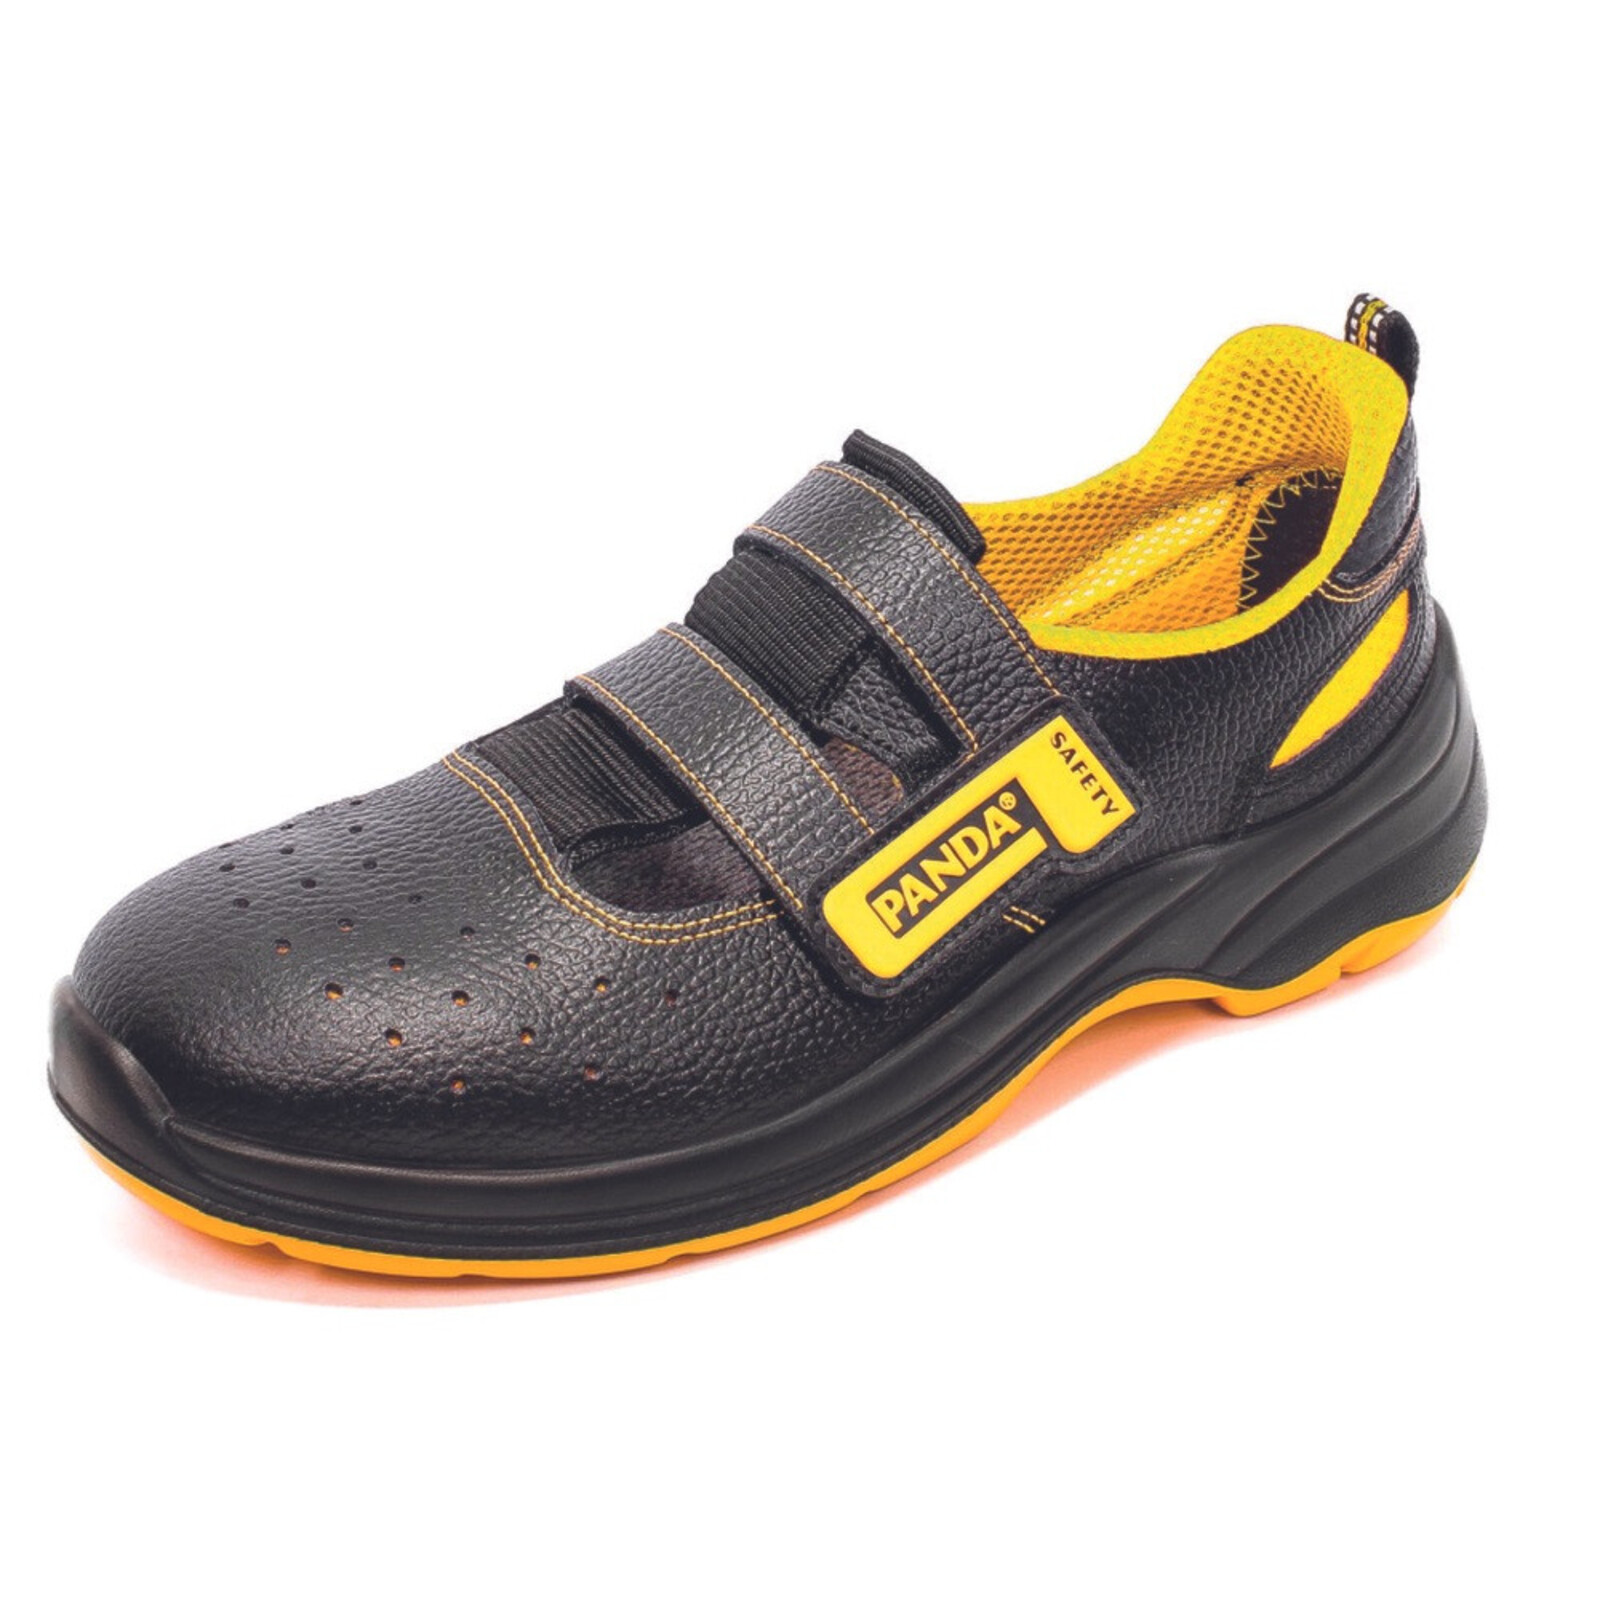 Bezpečnostné sandále Panda Basic Venezia MF S1P SRC - veľkosť: 44, farba: čierna/žltá